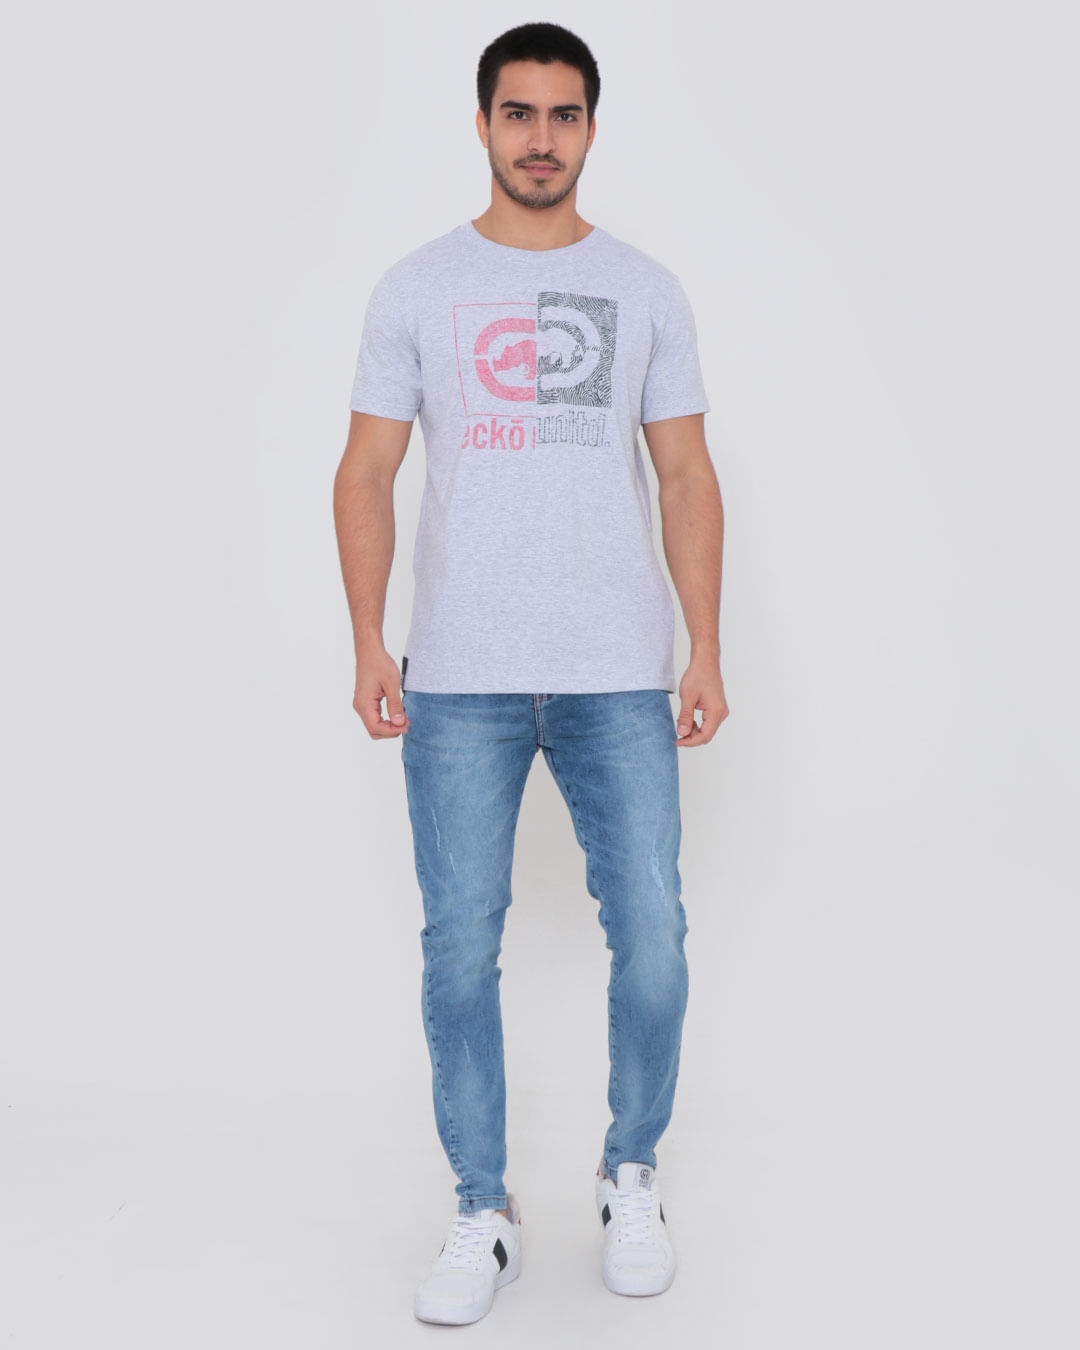 Camiseta-Estampa-Frontal-Ecko-Unlimited-Cinza